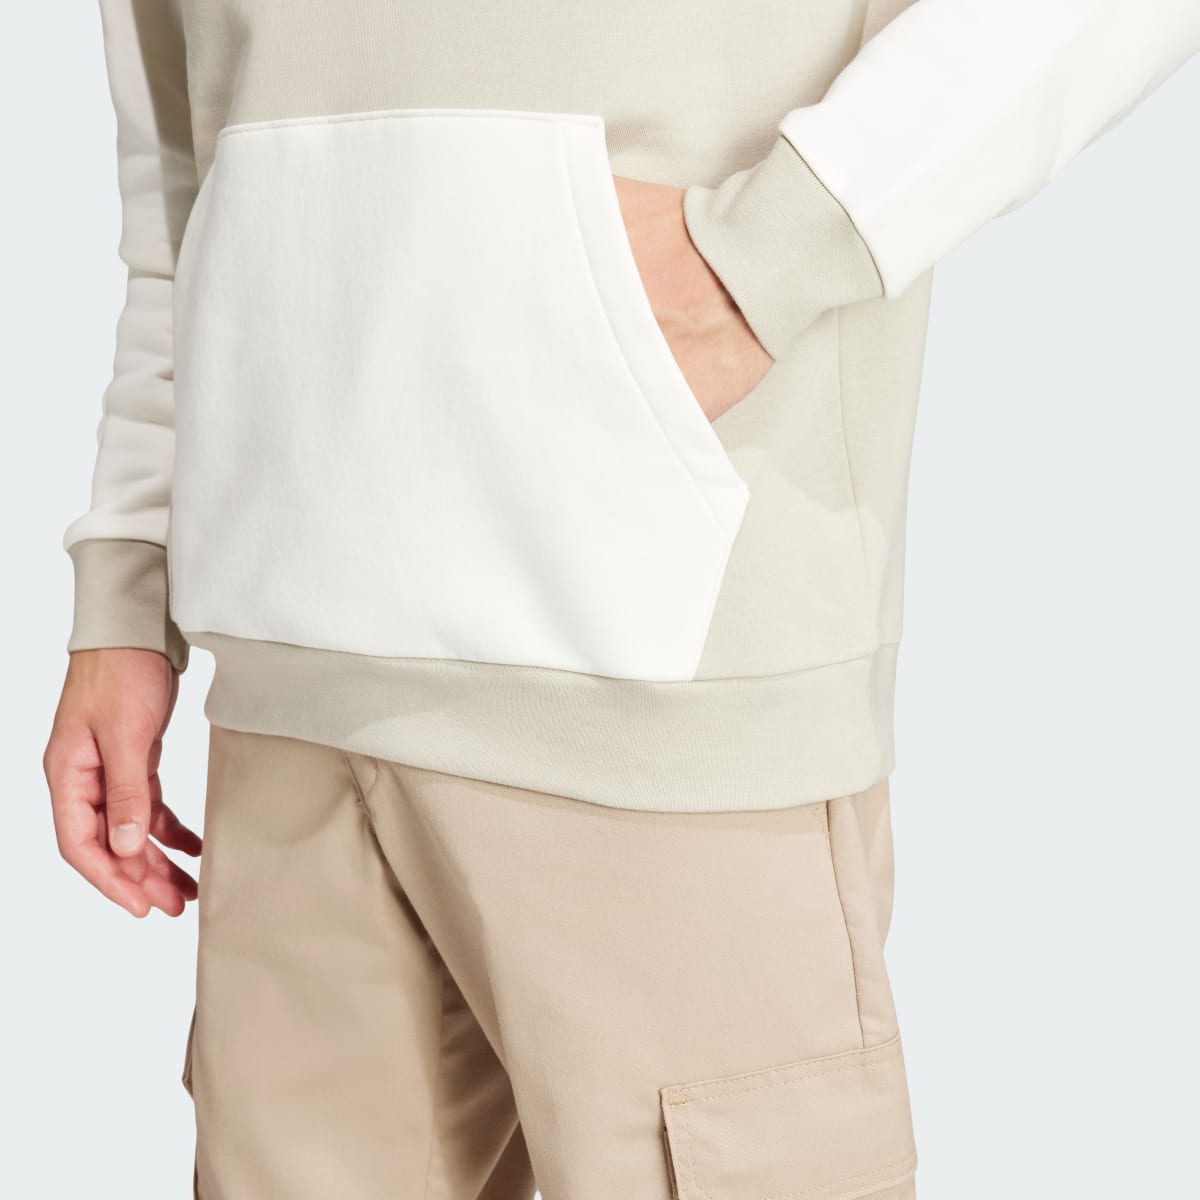 Adidas Camisola com Capuz em Fleece Essentials. 7